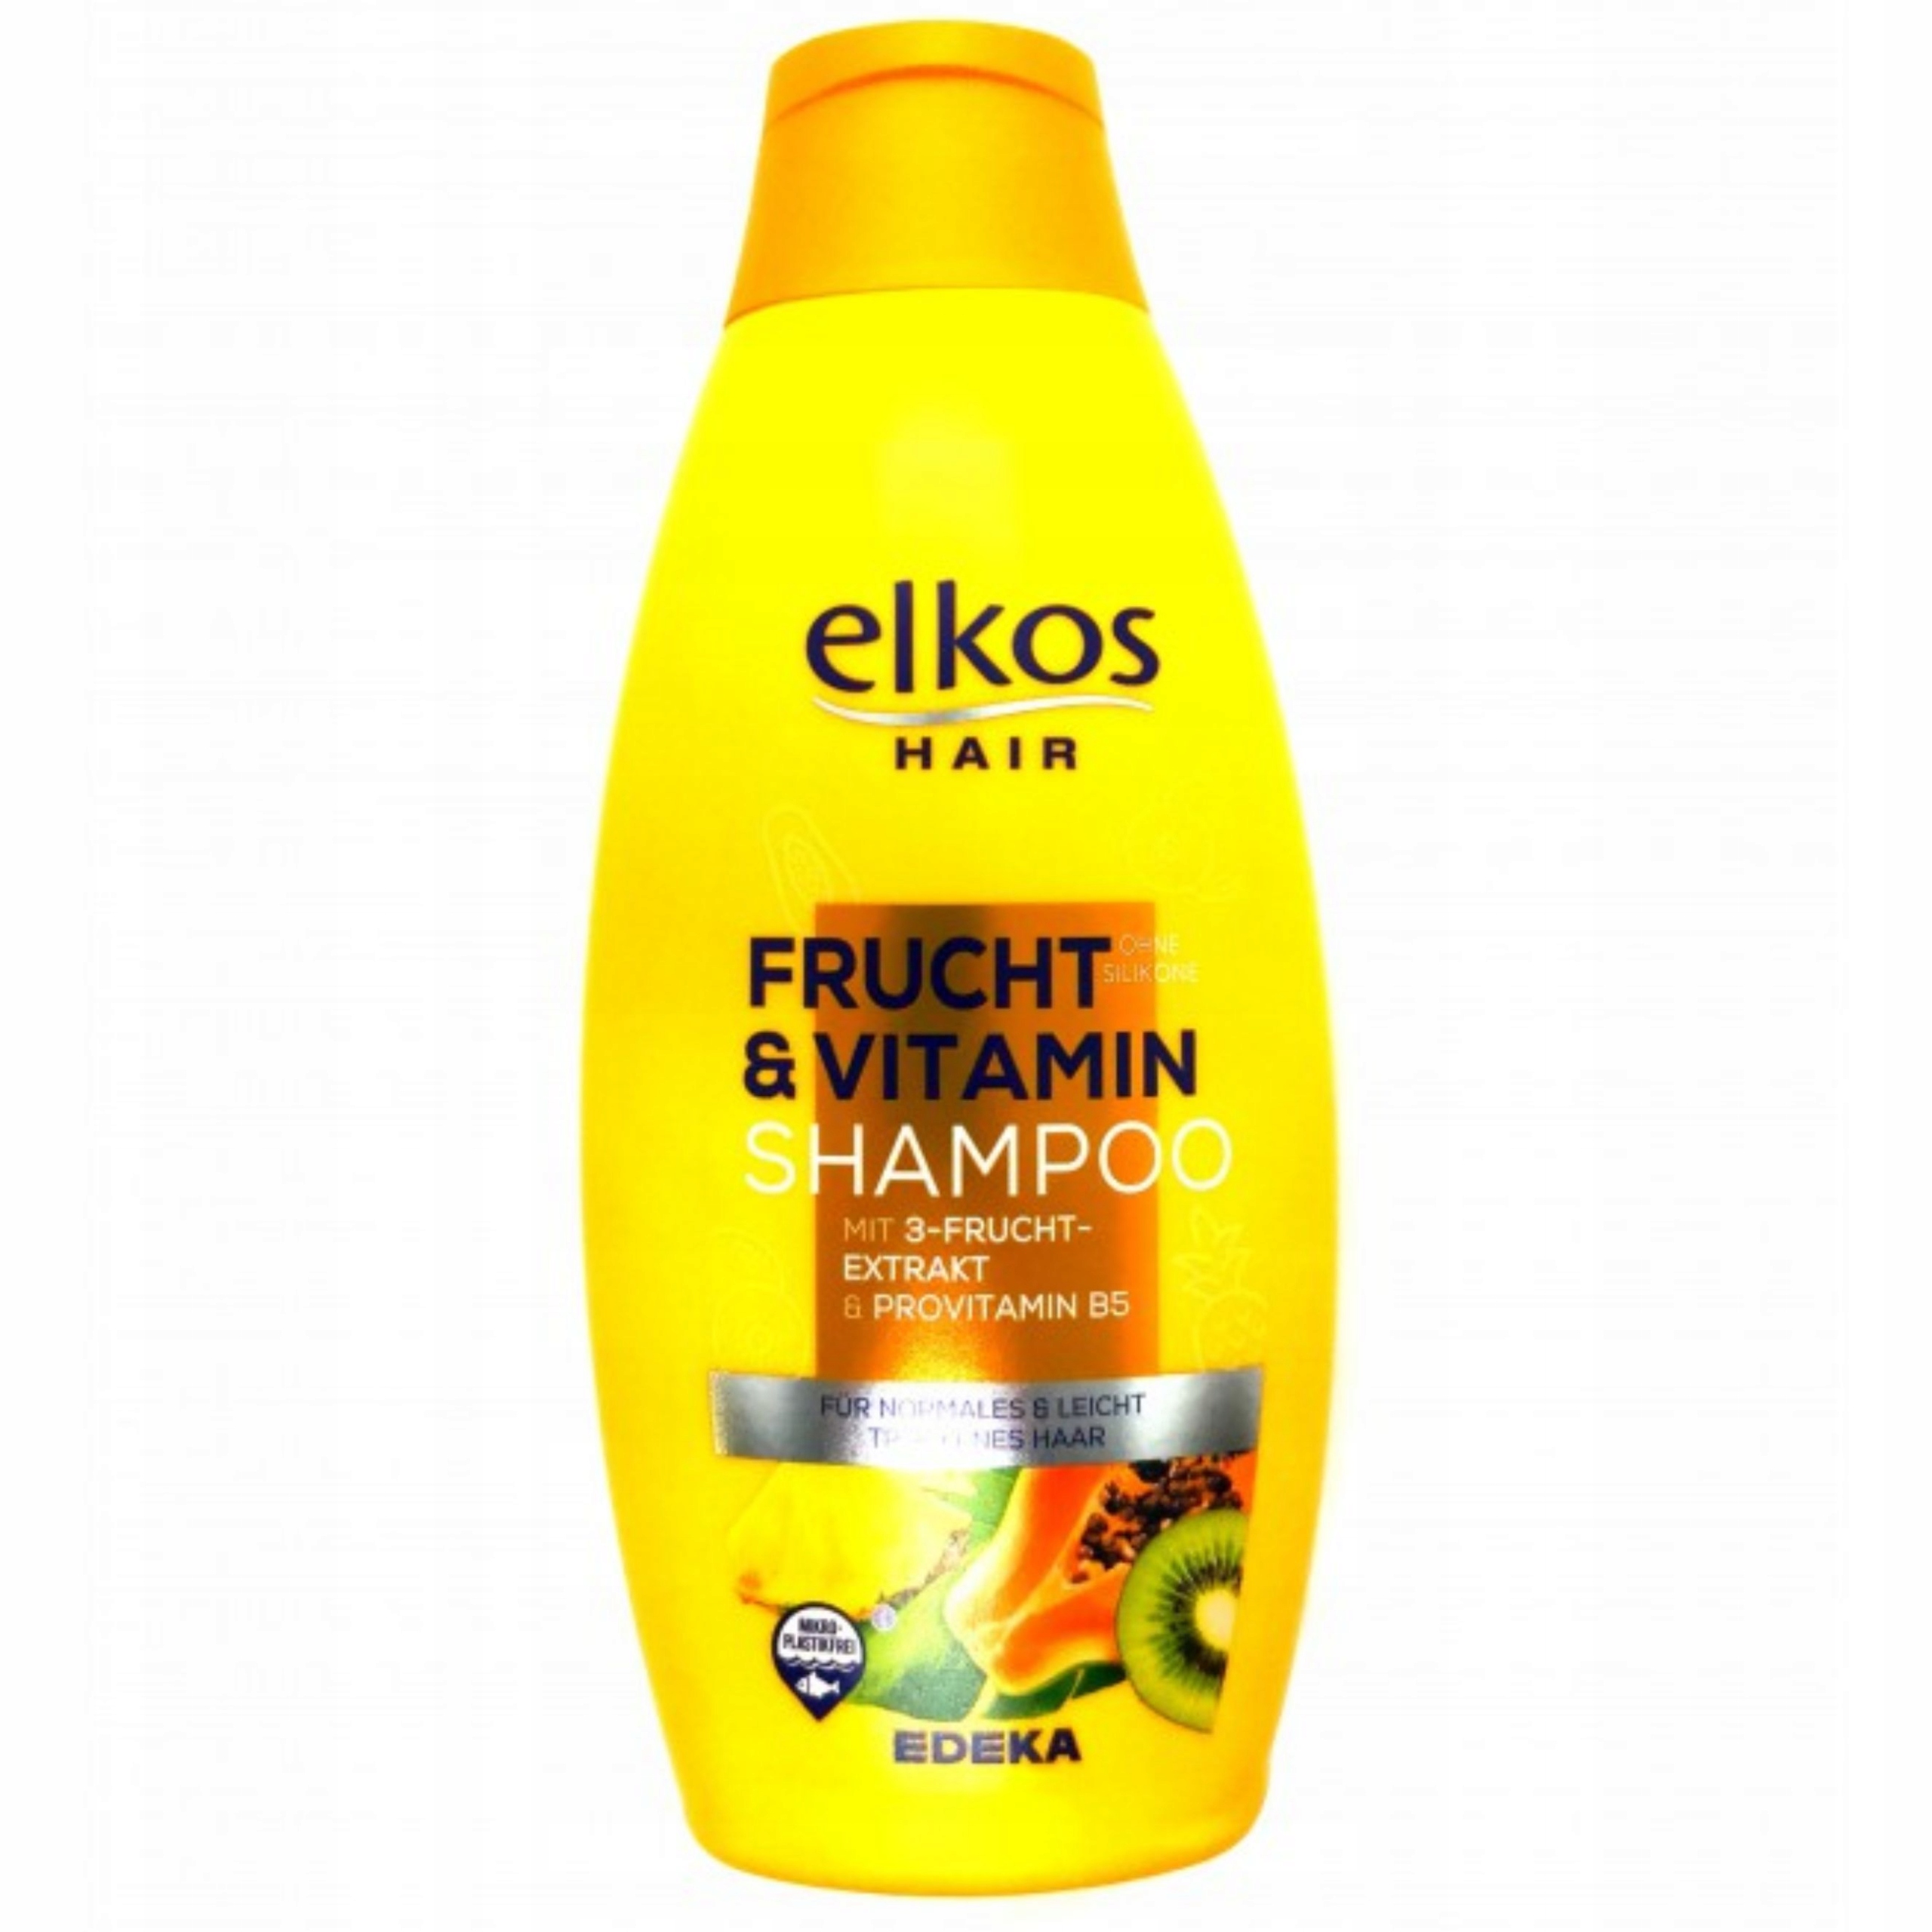 elkos owocowy szampon do włosów